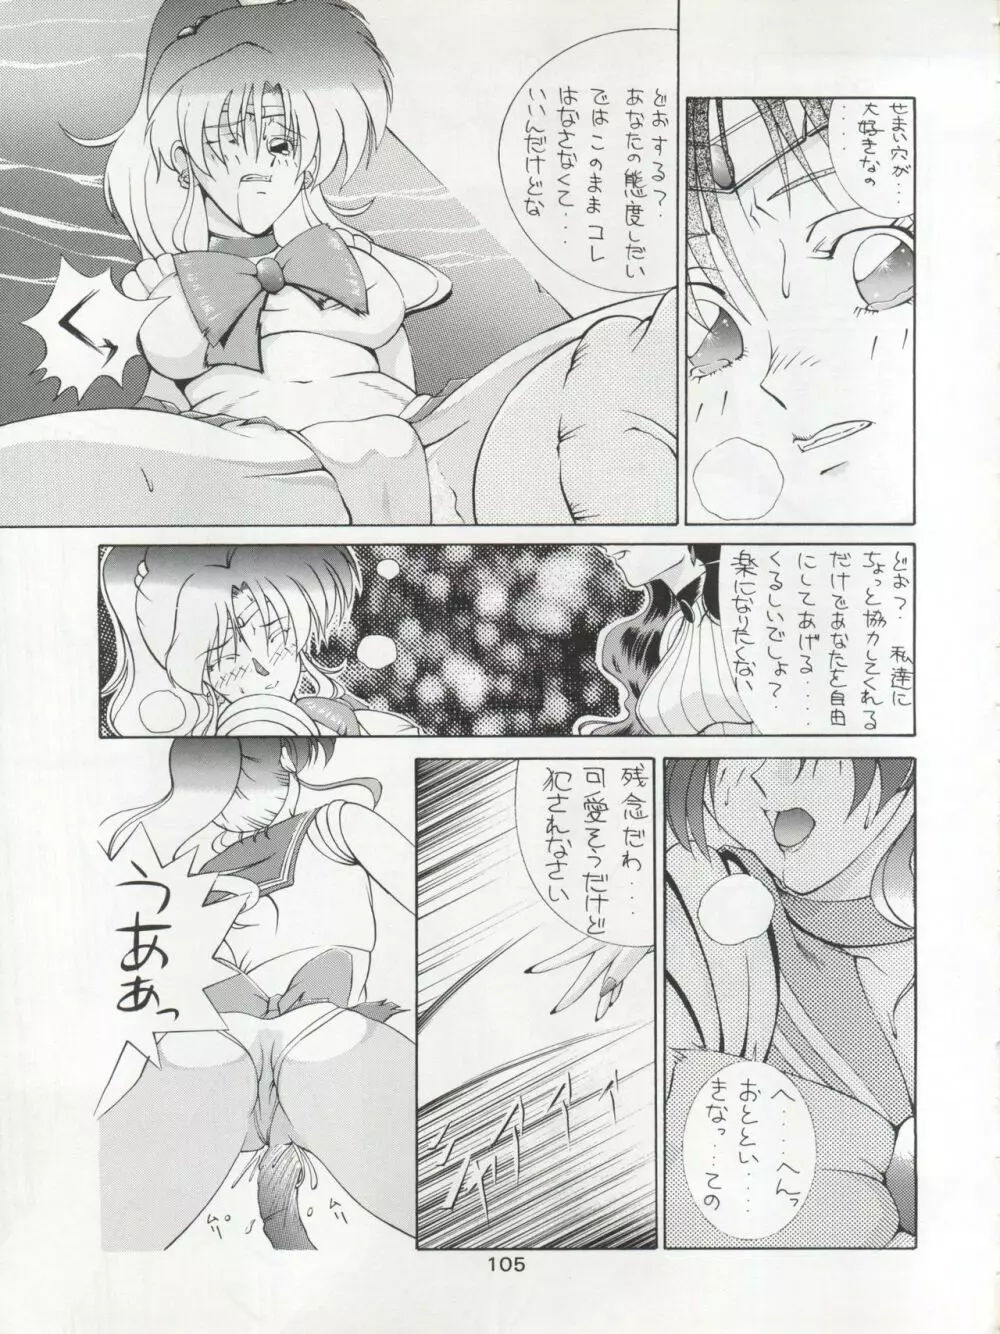 KATZE 7 上巻 - page106